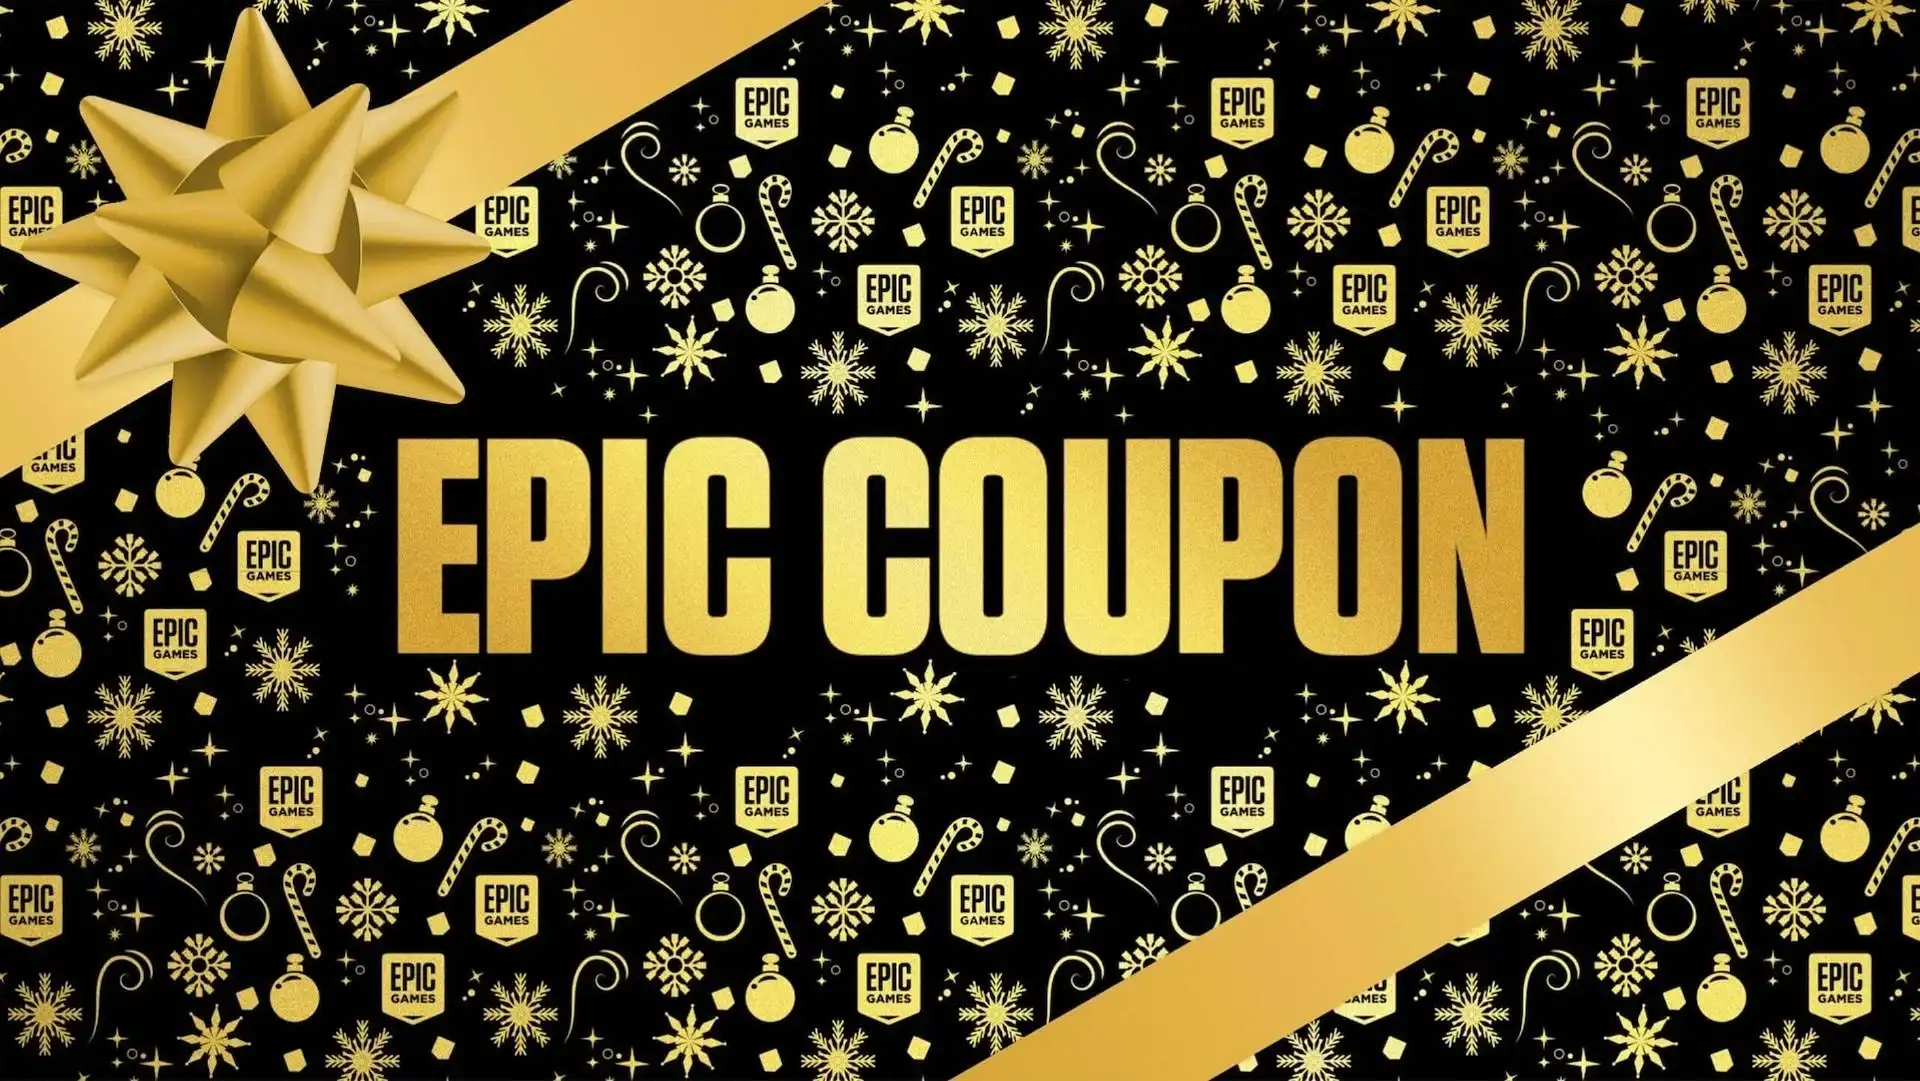 Праздничная распродажа Epic Games Store — даты начала и окончания, лучшие предложения, бесплатные игры и многое другое